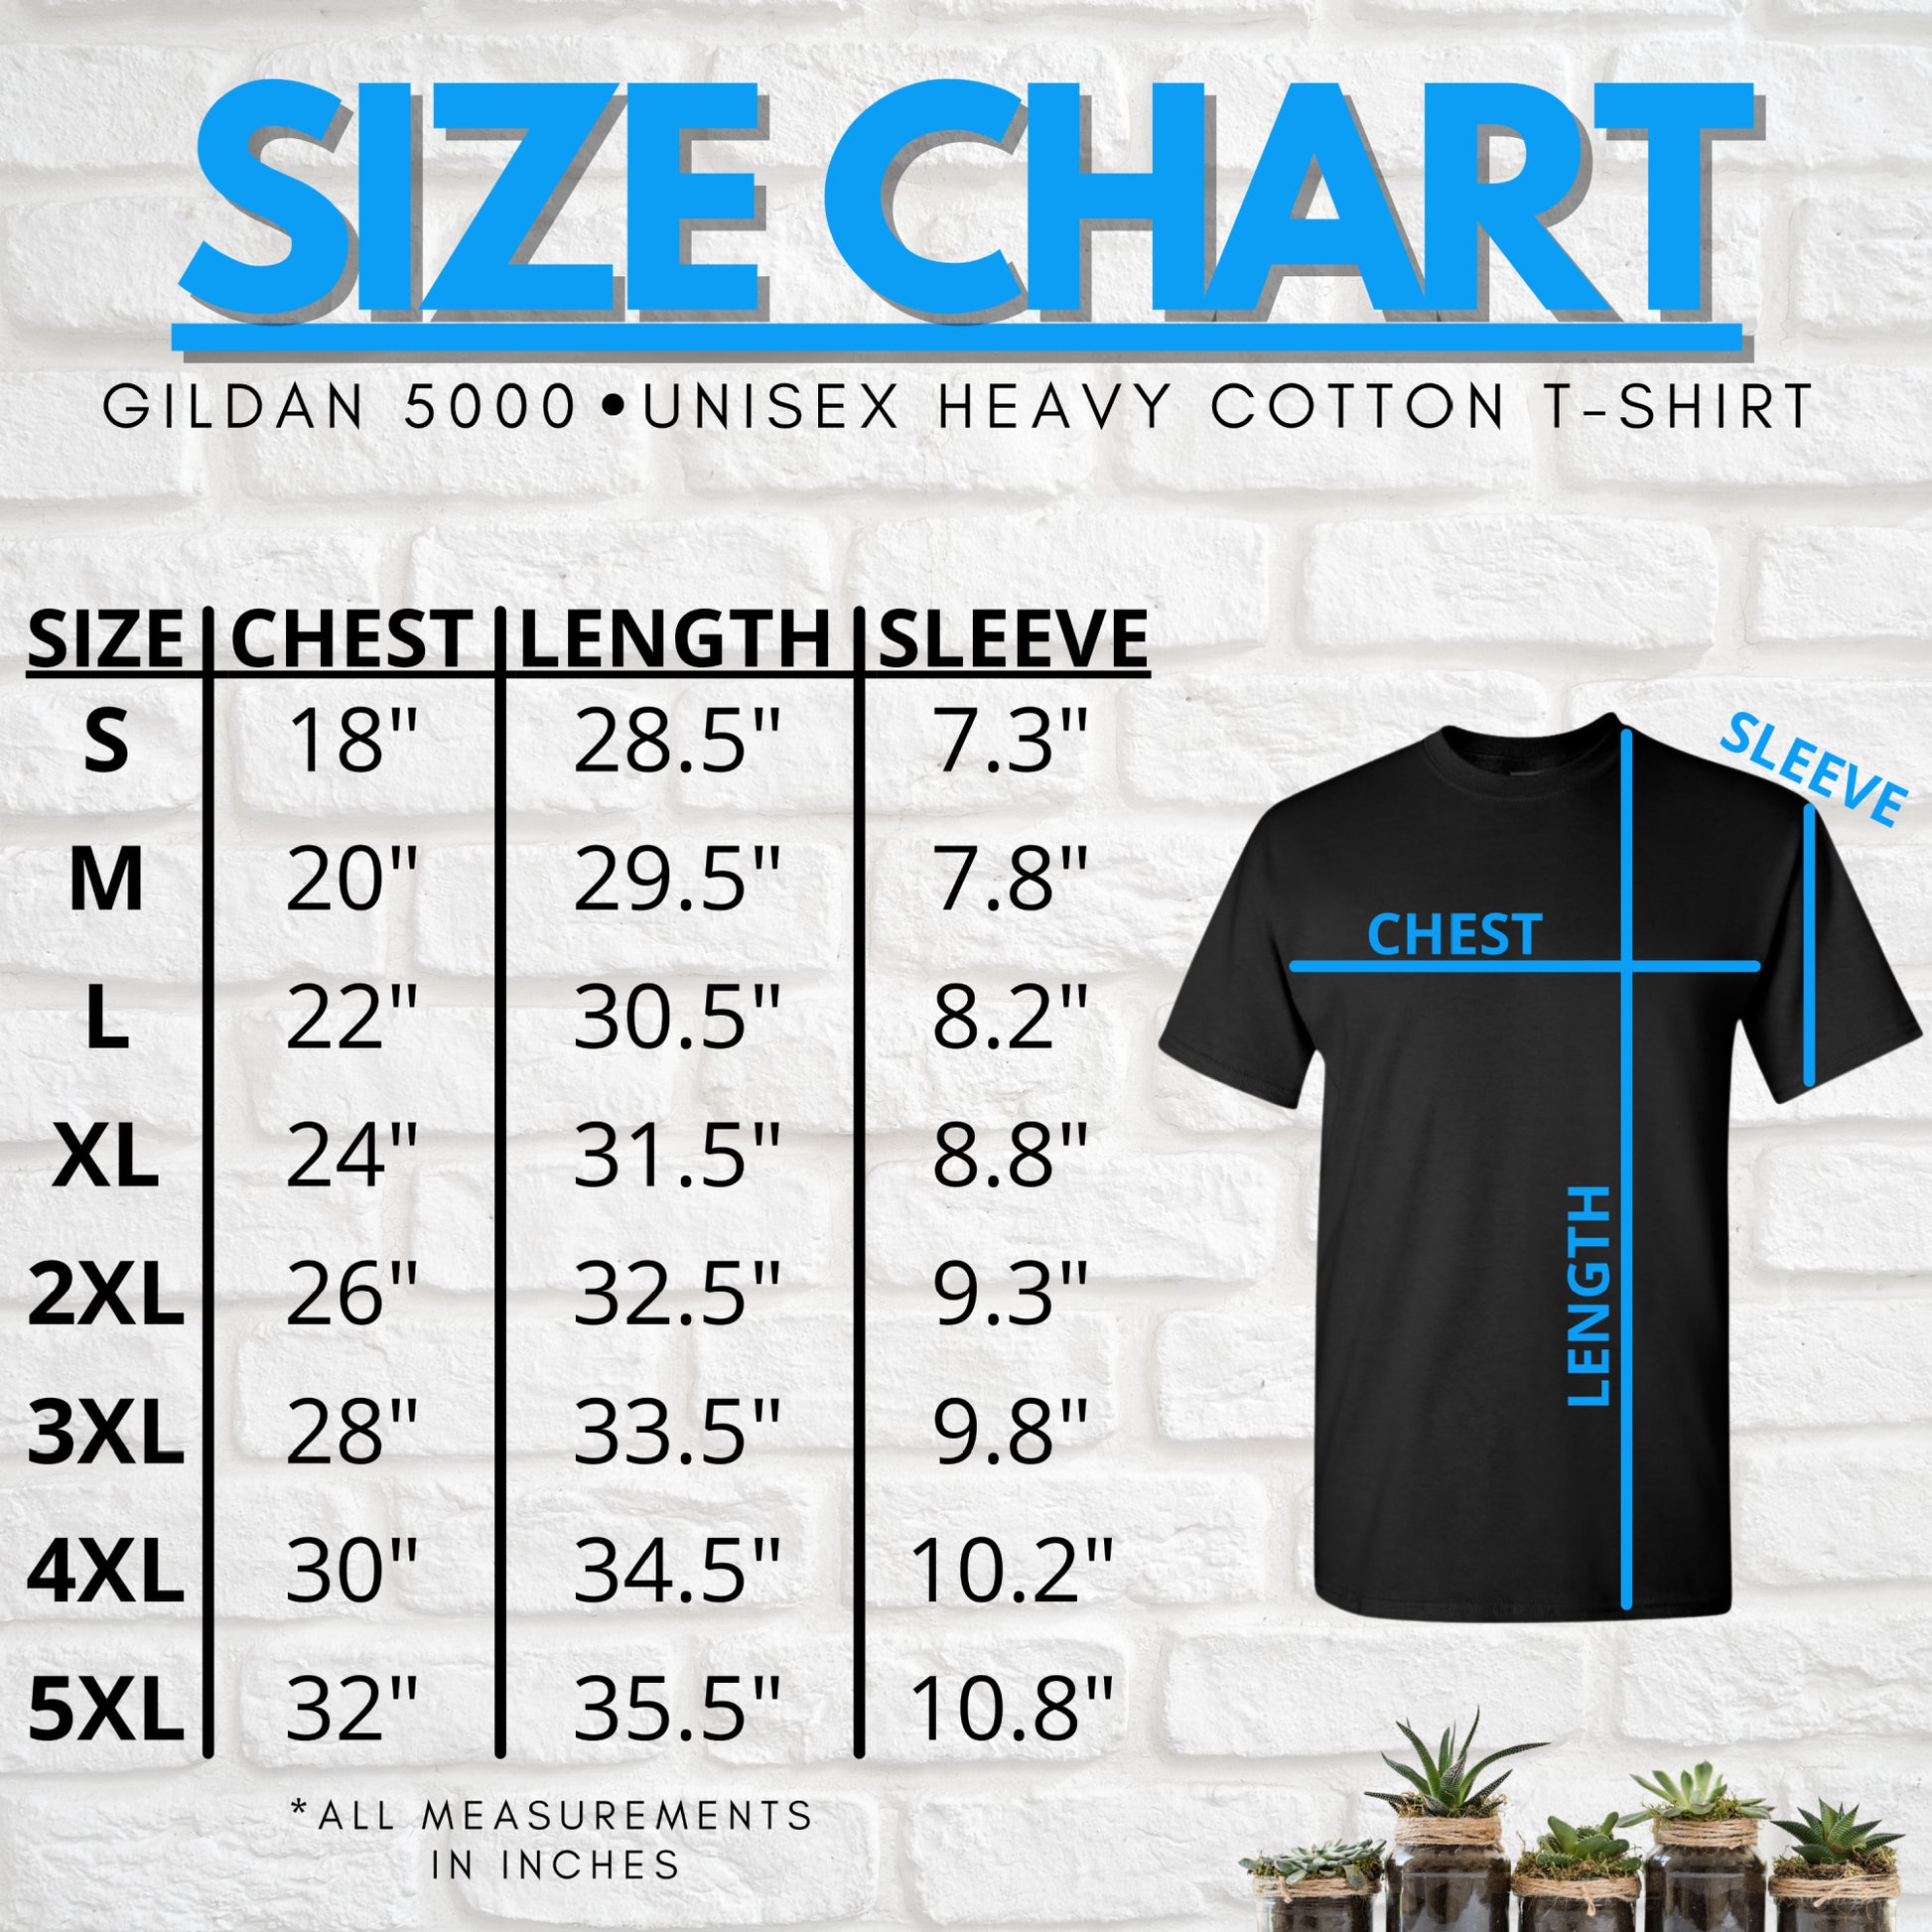 Size chart for this Gildan 5000 shirt